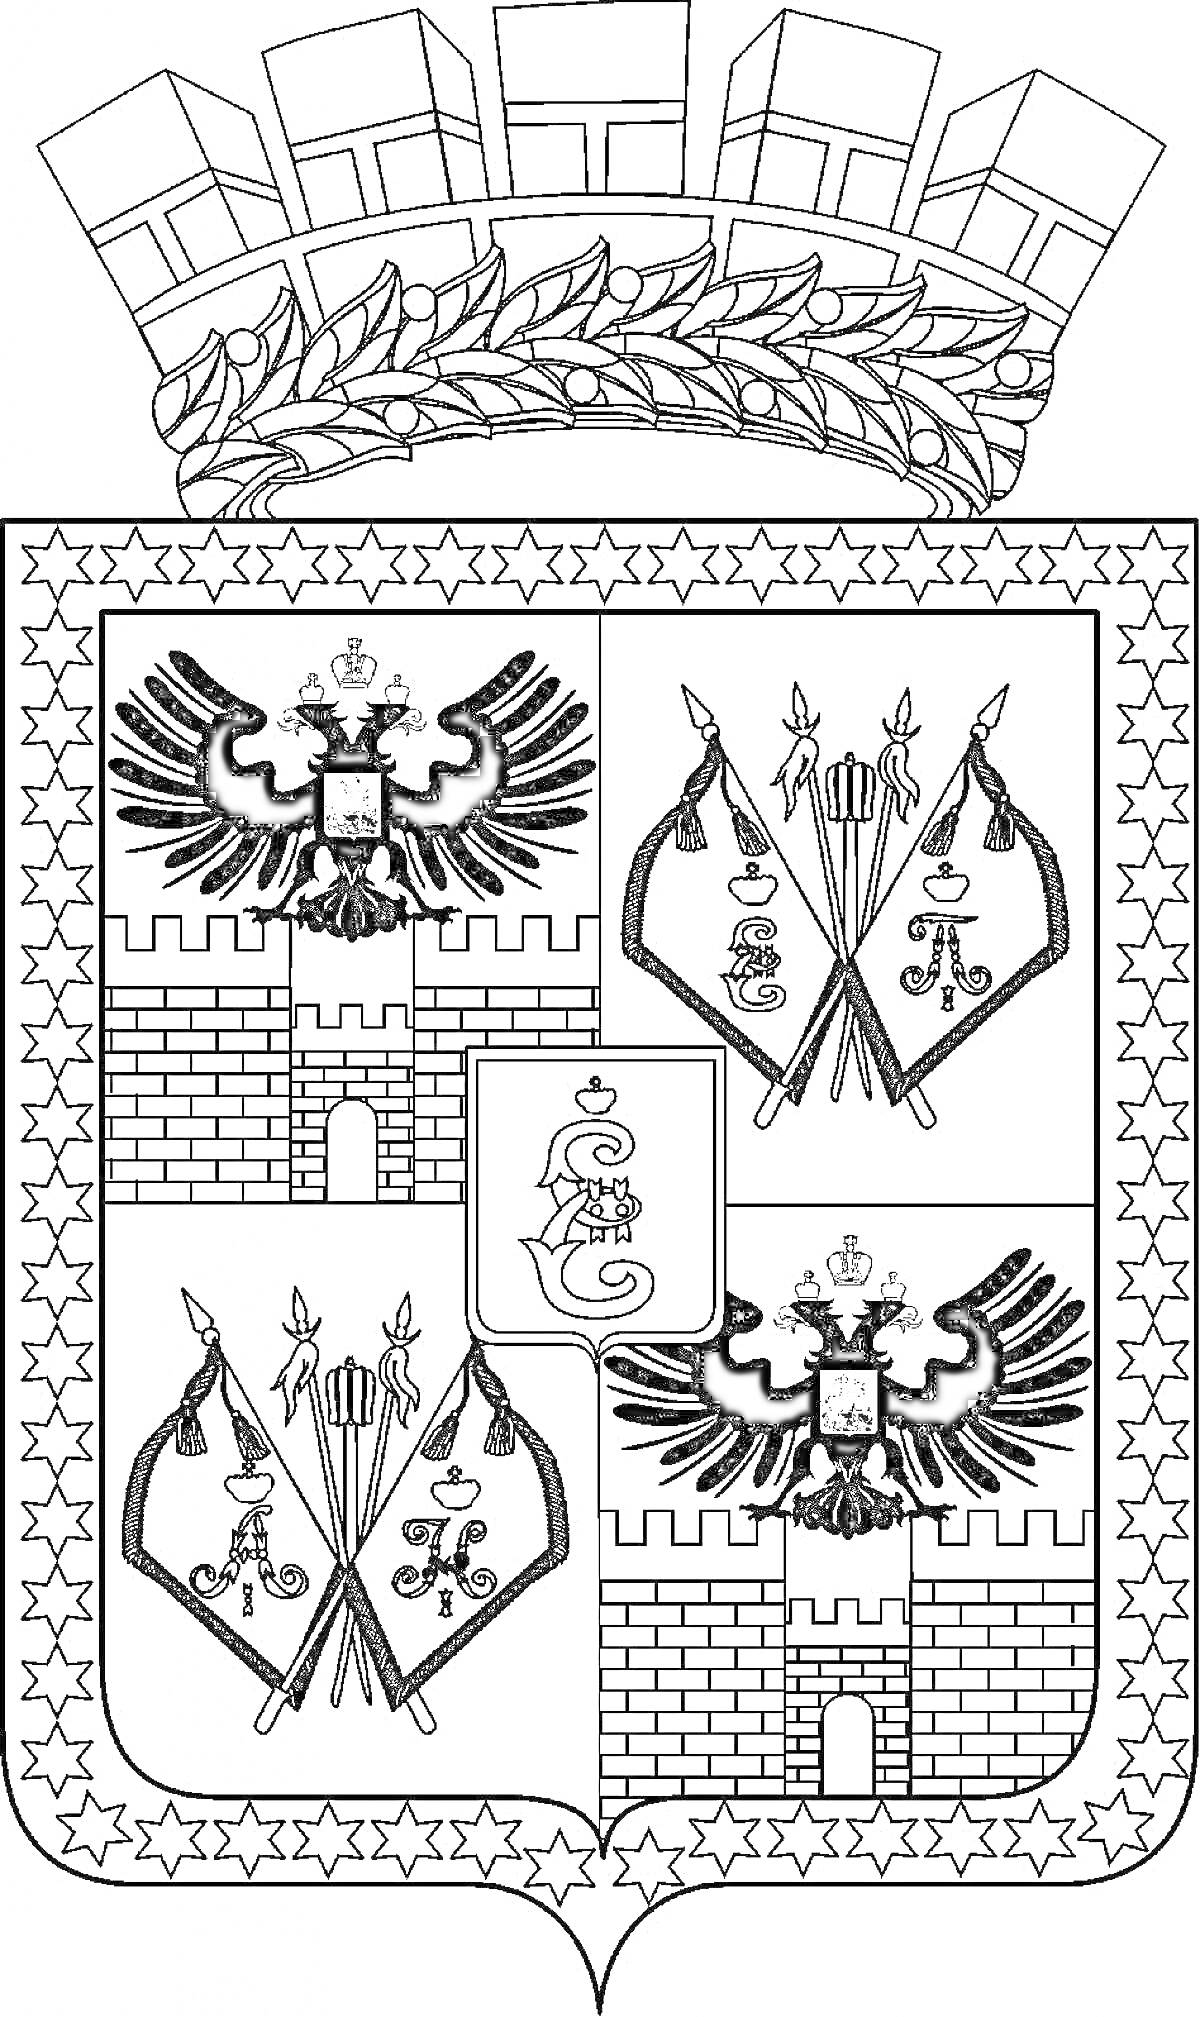 Раскраска Герб Краснодарского края с двуглавыми орлами, стрелами, крепостными стенами и щитом с монограммой